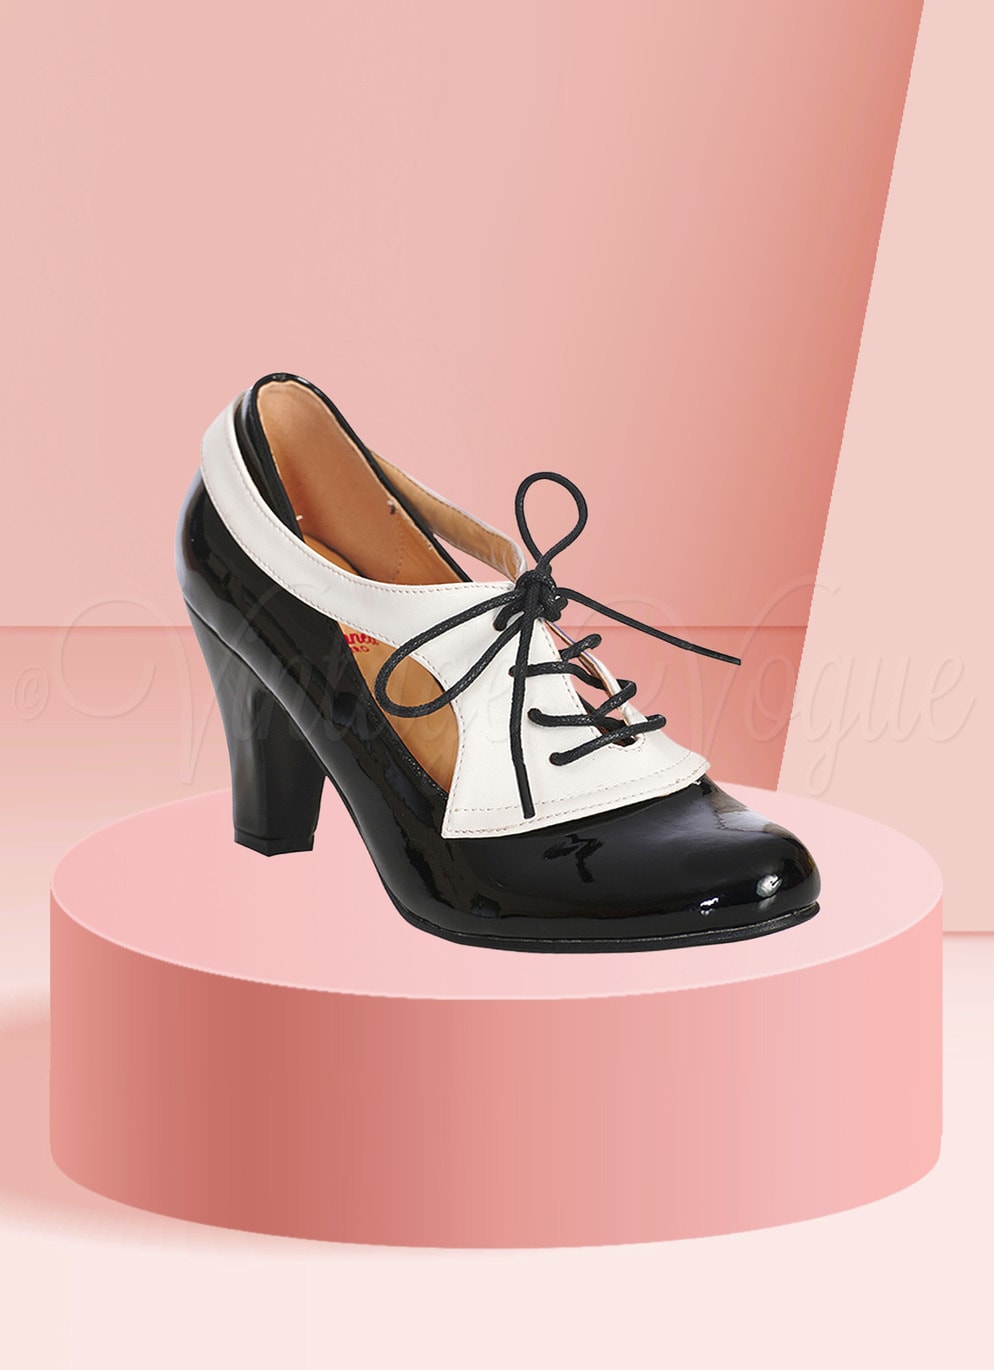 Banned 50er Jahre Retro Vintage Oxford Ankle Boot Pumps "Retro Influencer " in Schwarz Weiß